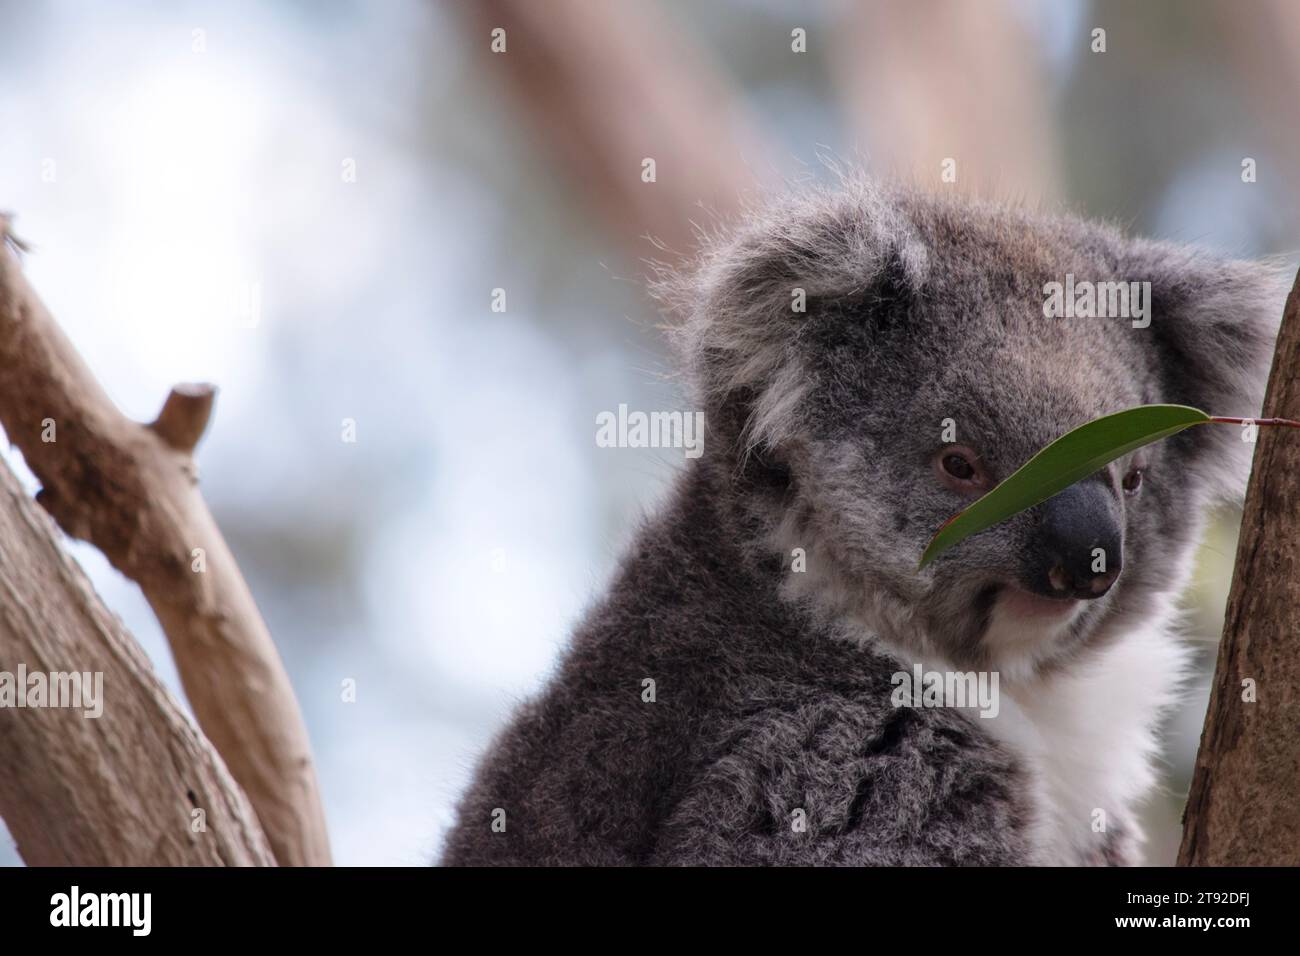 Le Koala a une grande tête ronde, de grandes oreilles de fourrure et un gros nez noir. Leur fourrure est habituellement de couleur gris-brun avec la fourrure blanche sur la poitrine, les bras intérieurs, Banque D'Images